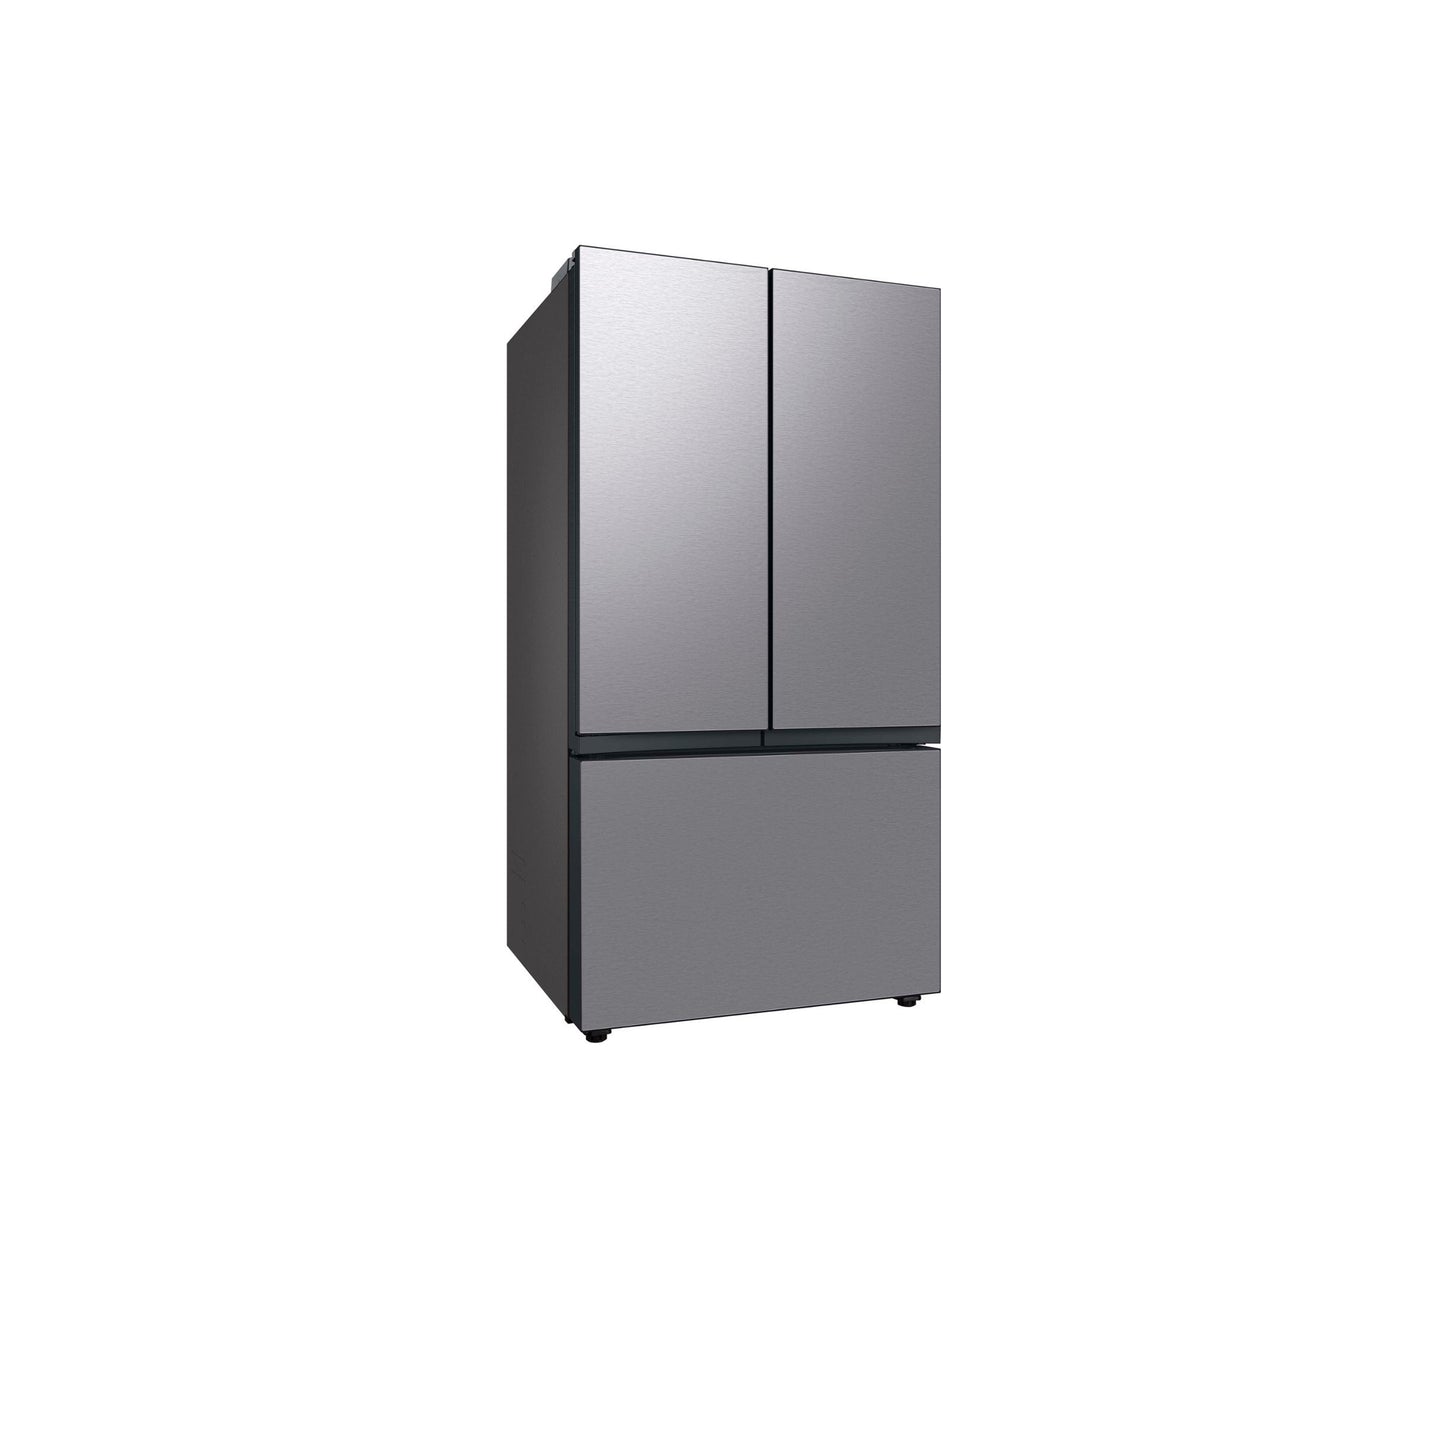 ثلاجة مخصصة بباب فرنسي بثلاثة أبواب (24 قدمًا مكعبًا) مزودة بمركز المشروبات™ من الفولاذ المقاوم للصدأ. 